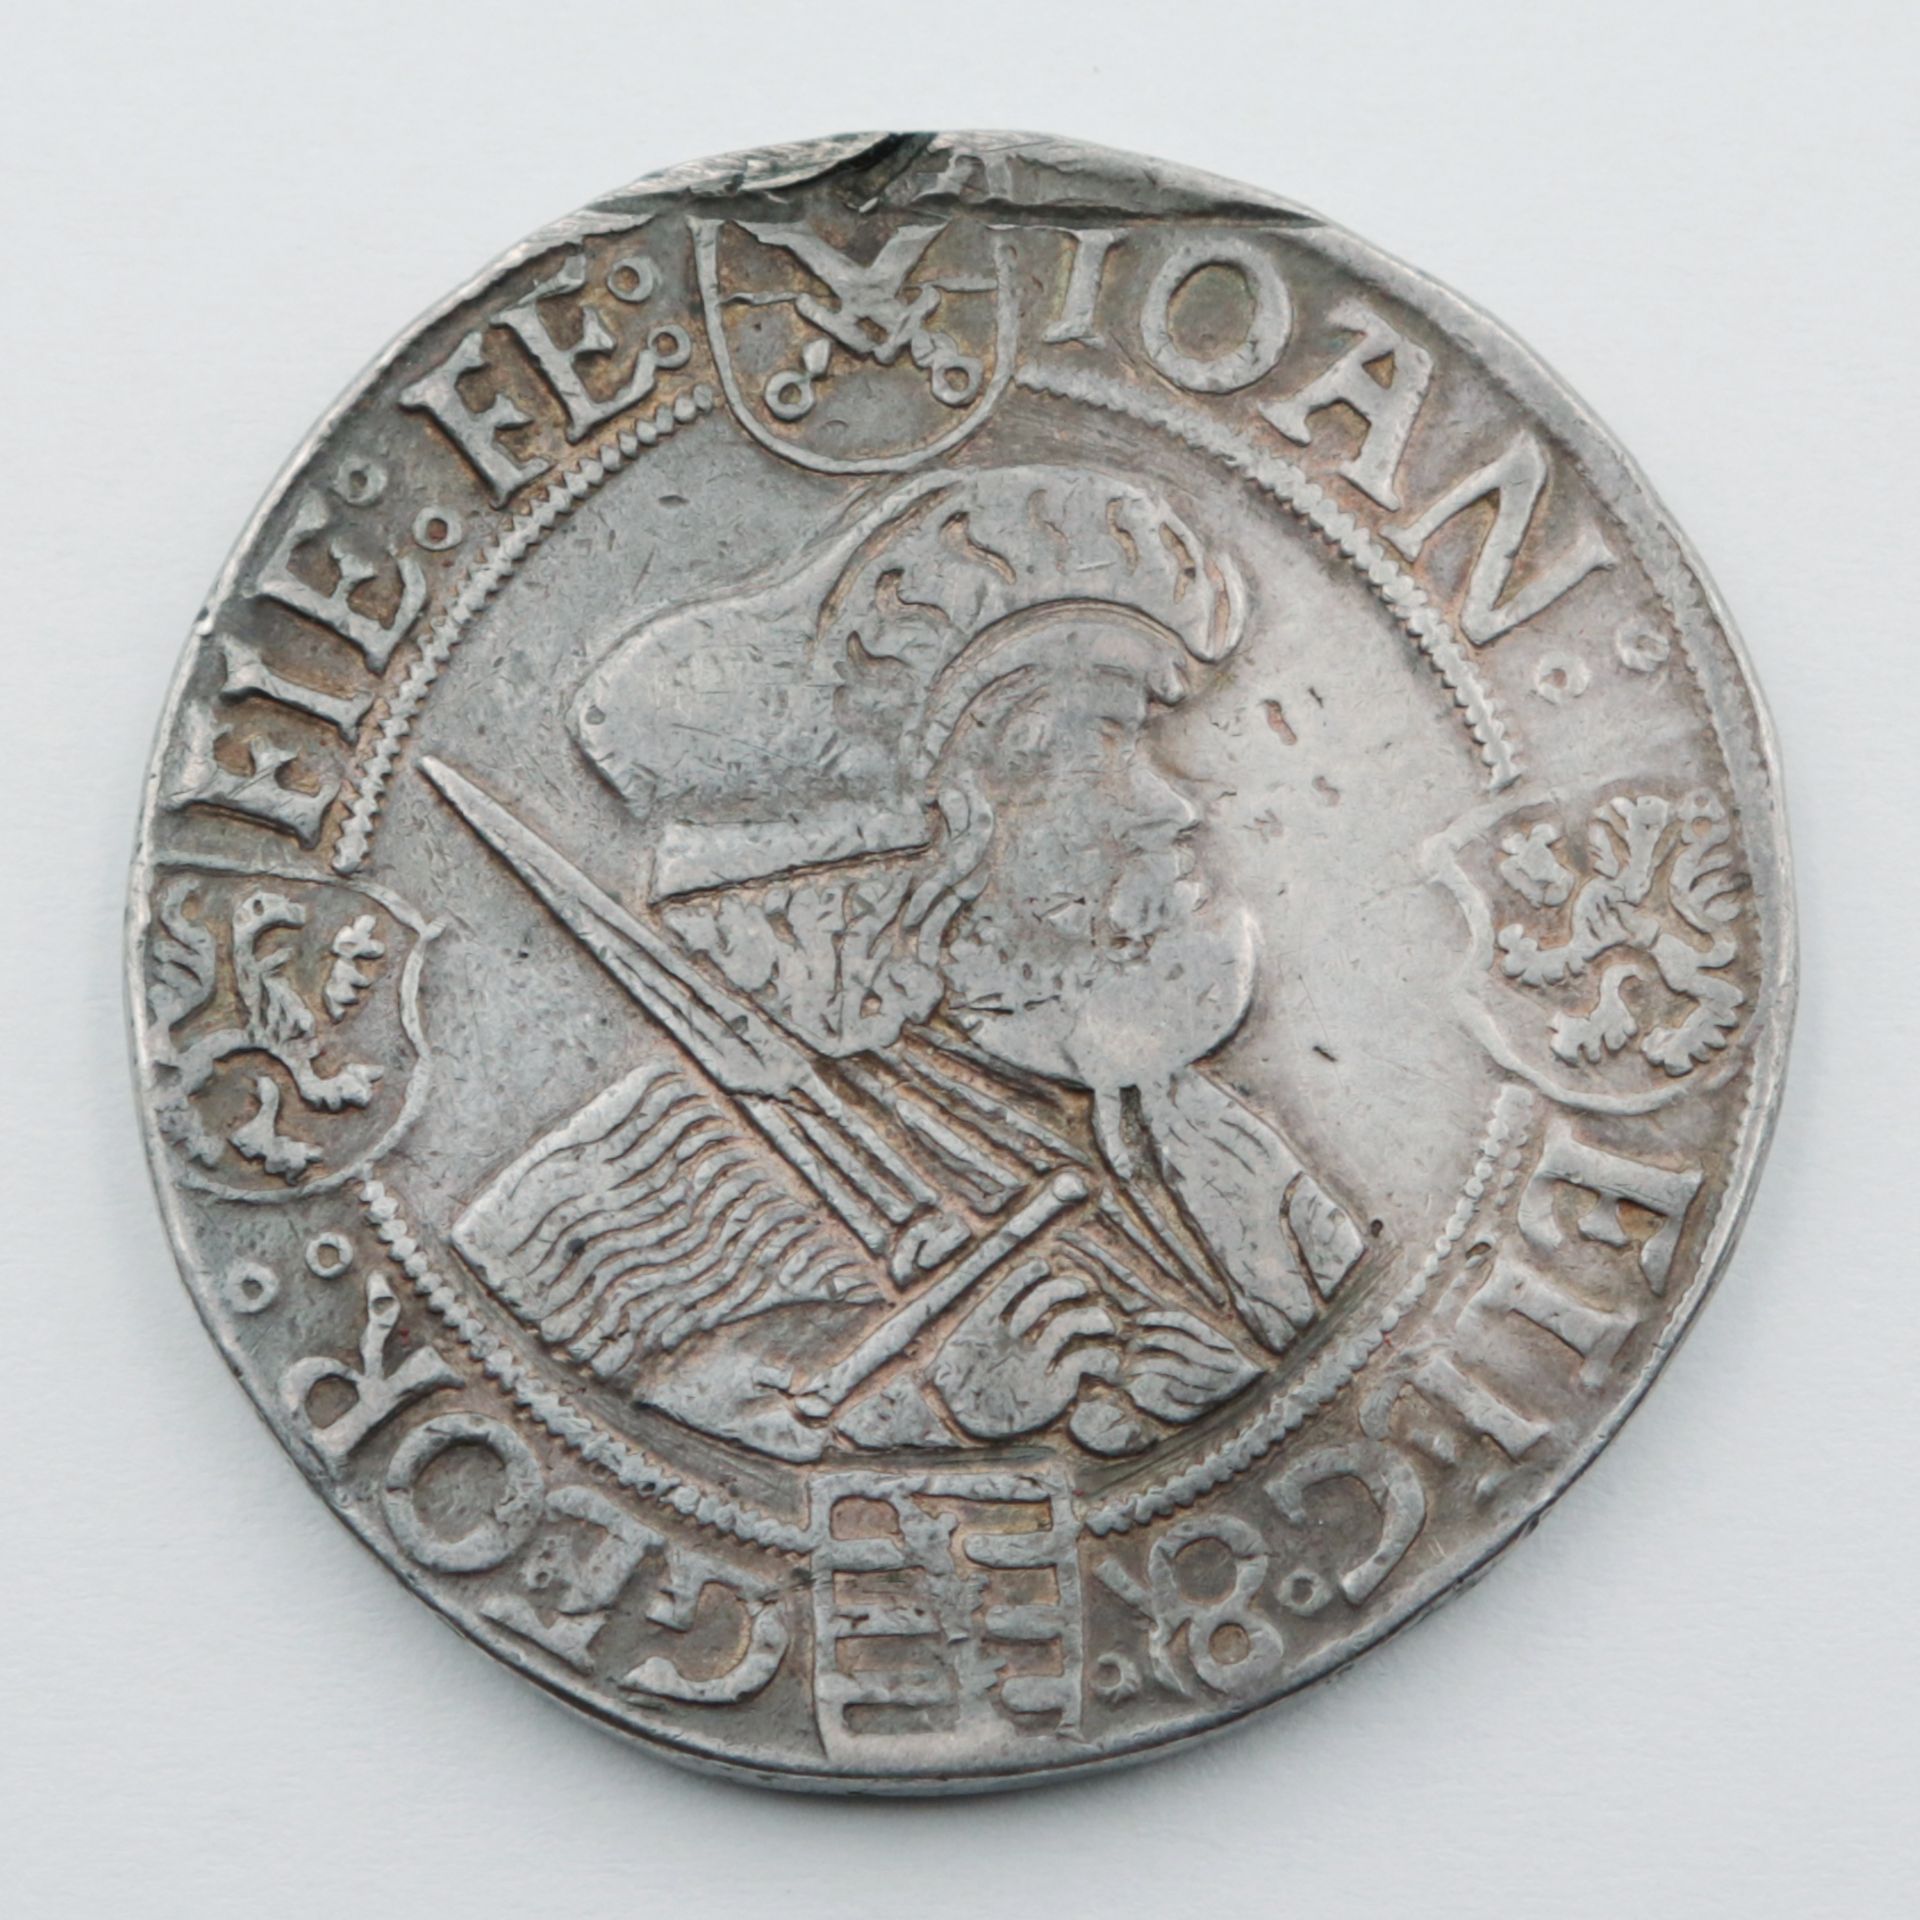 Sachsen Silbermünze, Guldengroschen, Sachsen o. J., Johann der Beständige und Georg 1525-30,